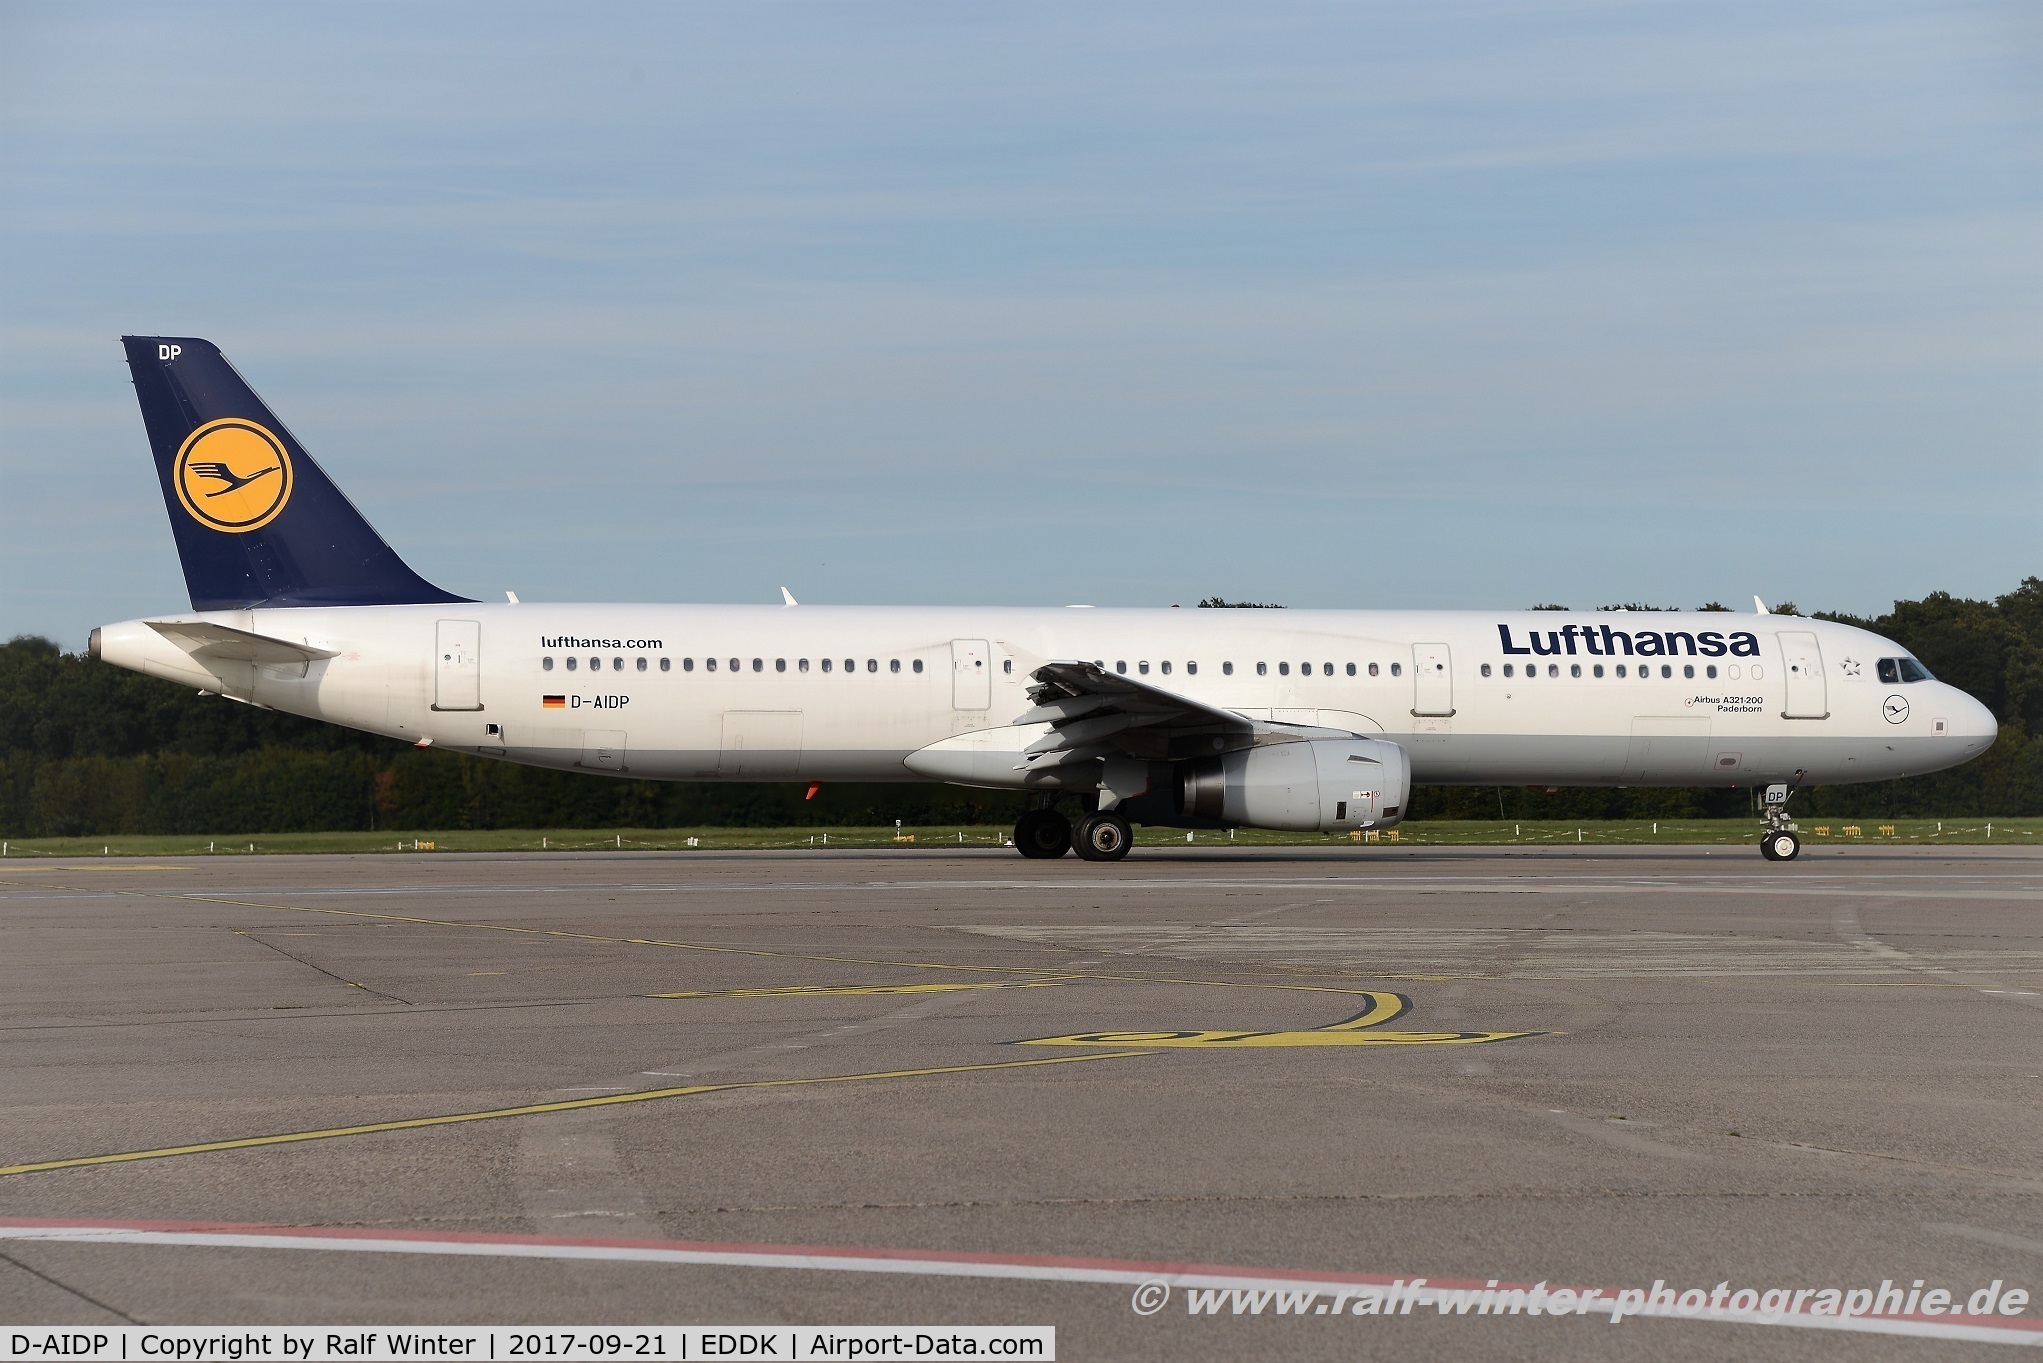 D-AIDP, 2012 Airbus A321-231 C/N 5049, Airbus A321-231 - LH DLH Lufthansa 'Paderborn' - 5049 - D-AIDP - 21.09.2017 - CGN